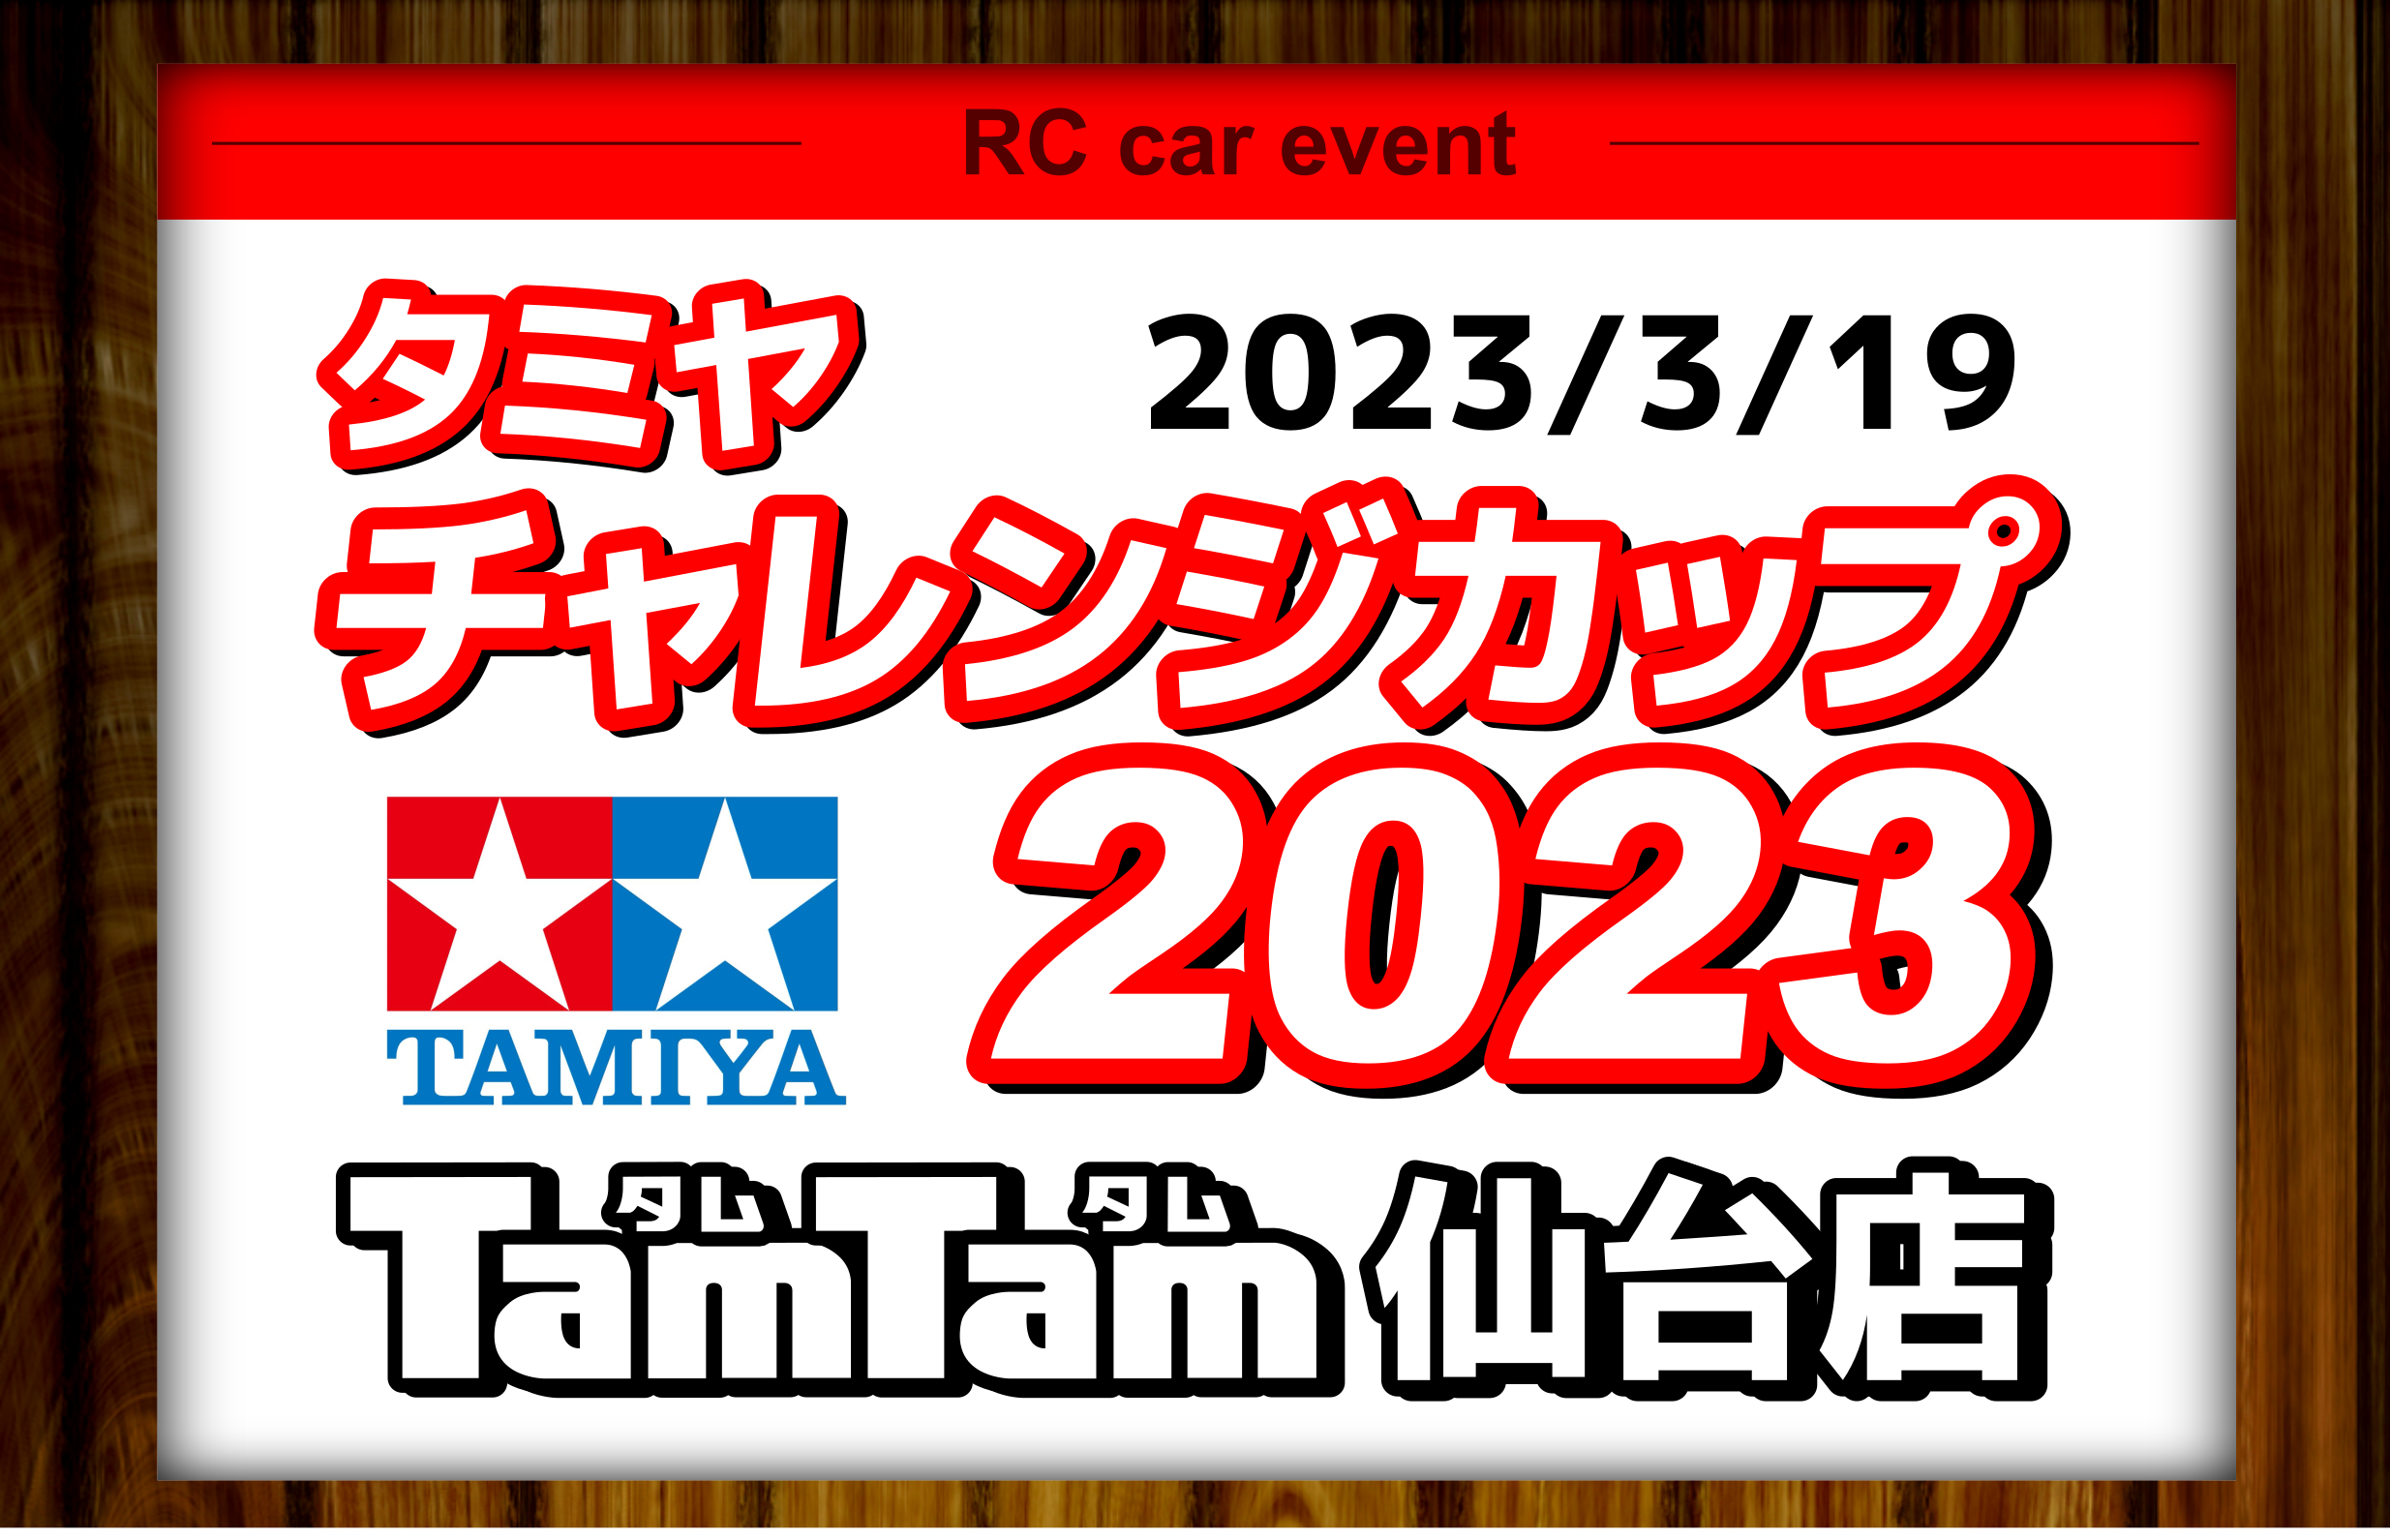 〈RC/レースイベント〉タミヤチャレンジカップ 2023開催のお知らせ